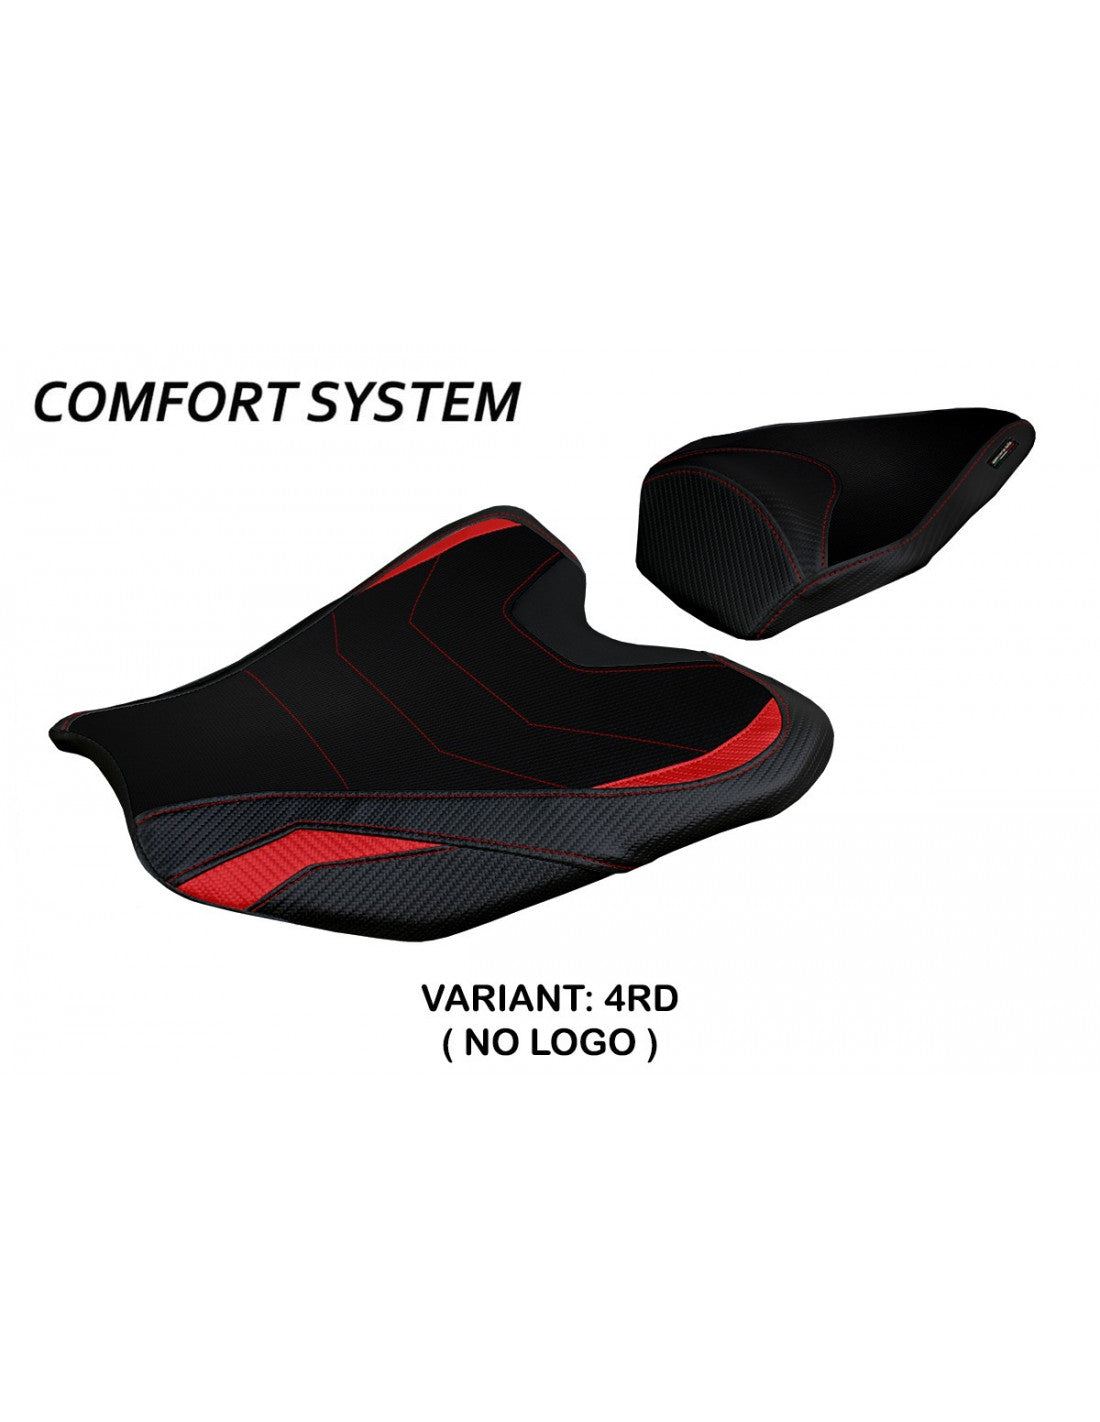 Tappezzeria Pedara Comfort System Seat Cover for Honda CBR 1000RR